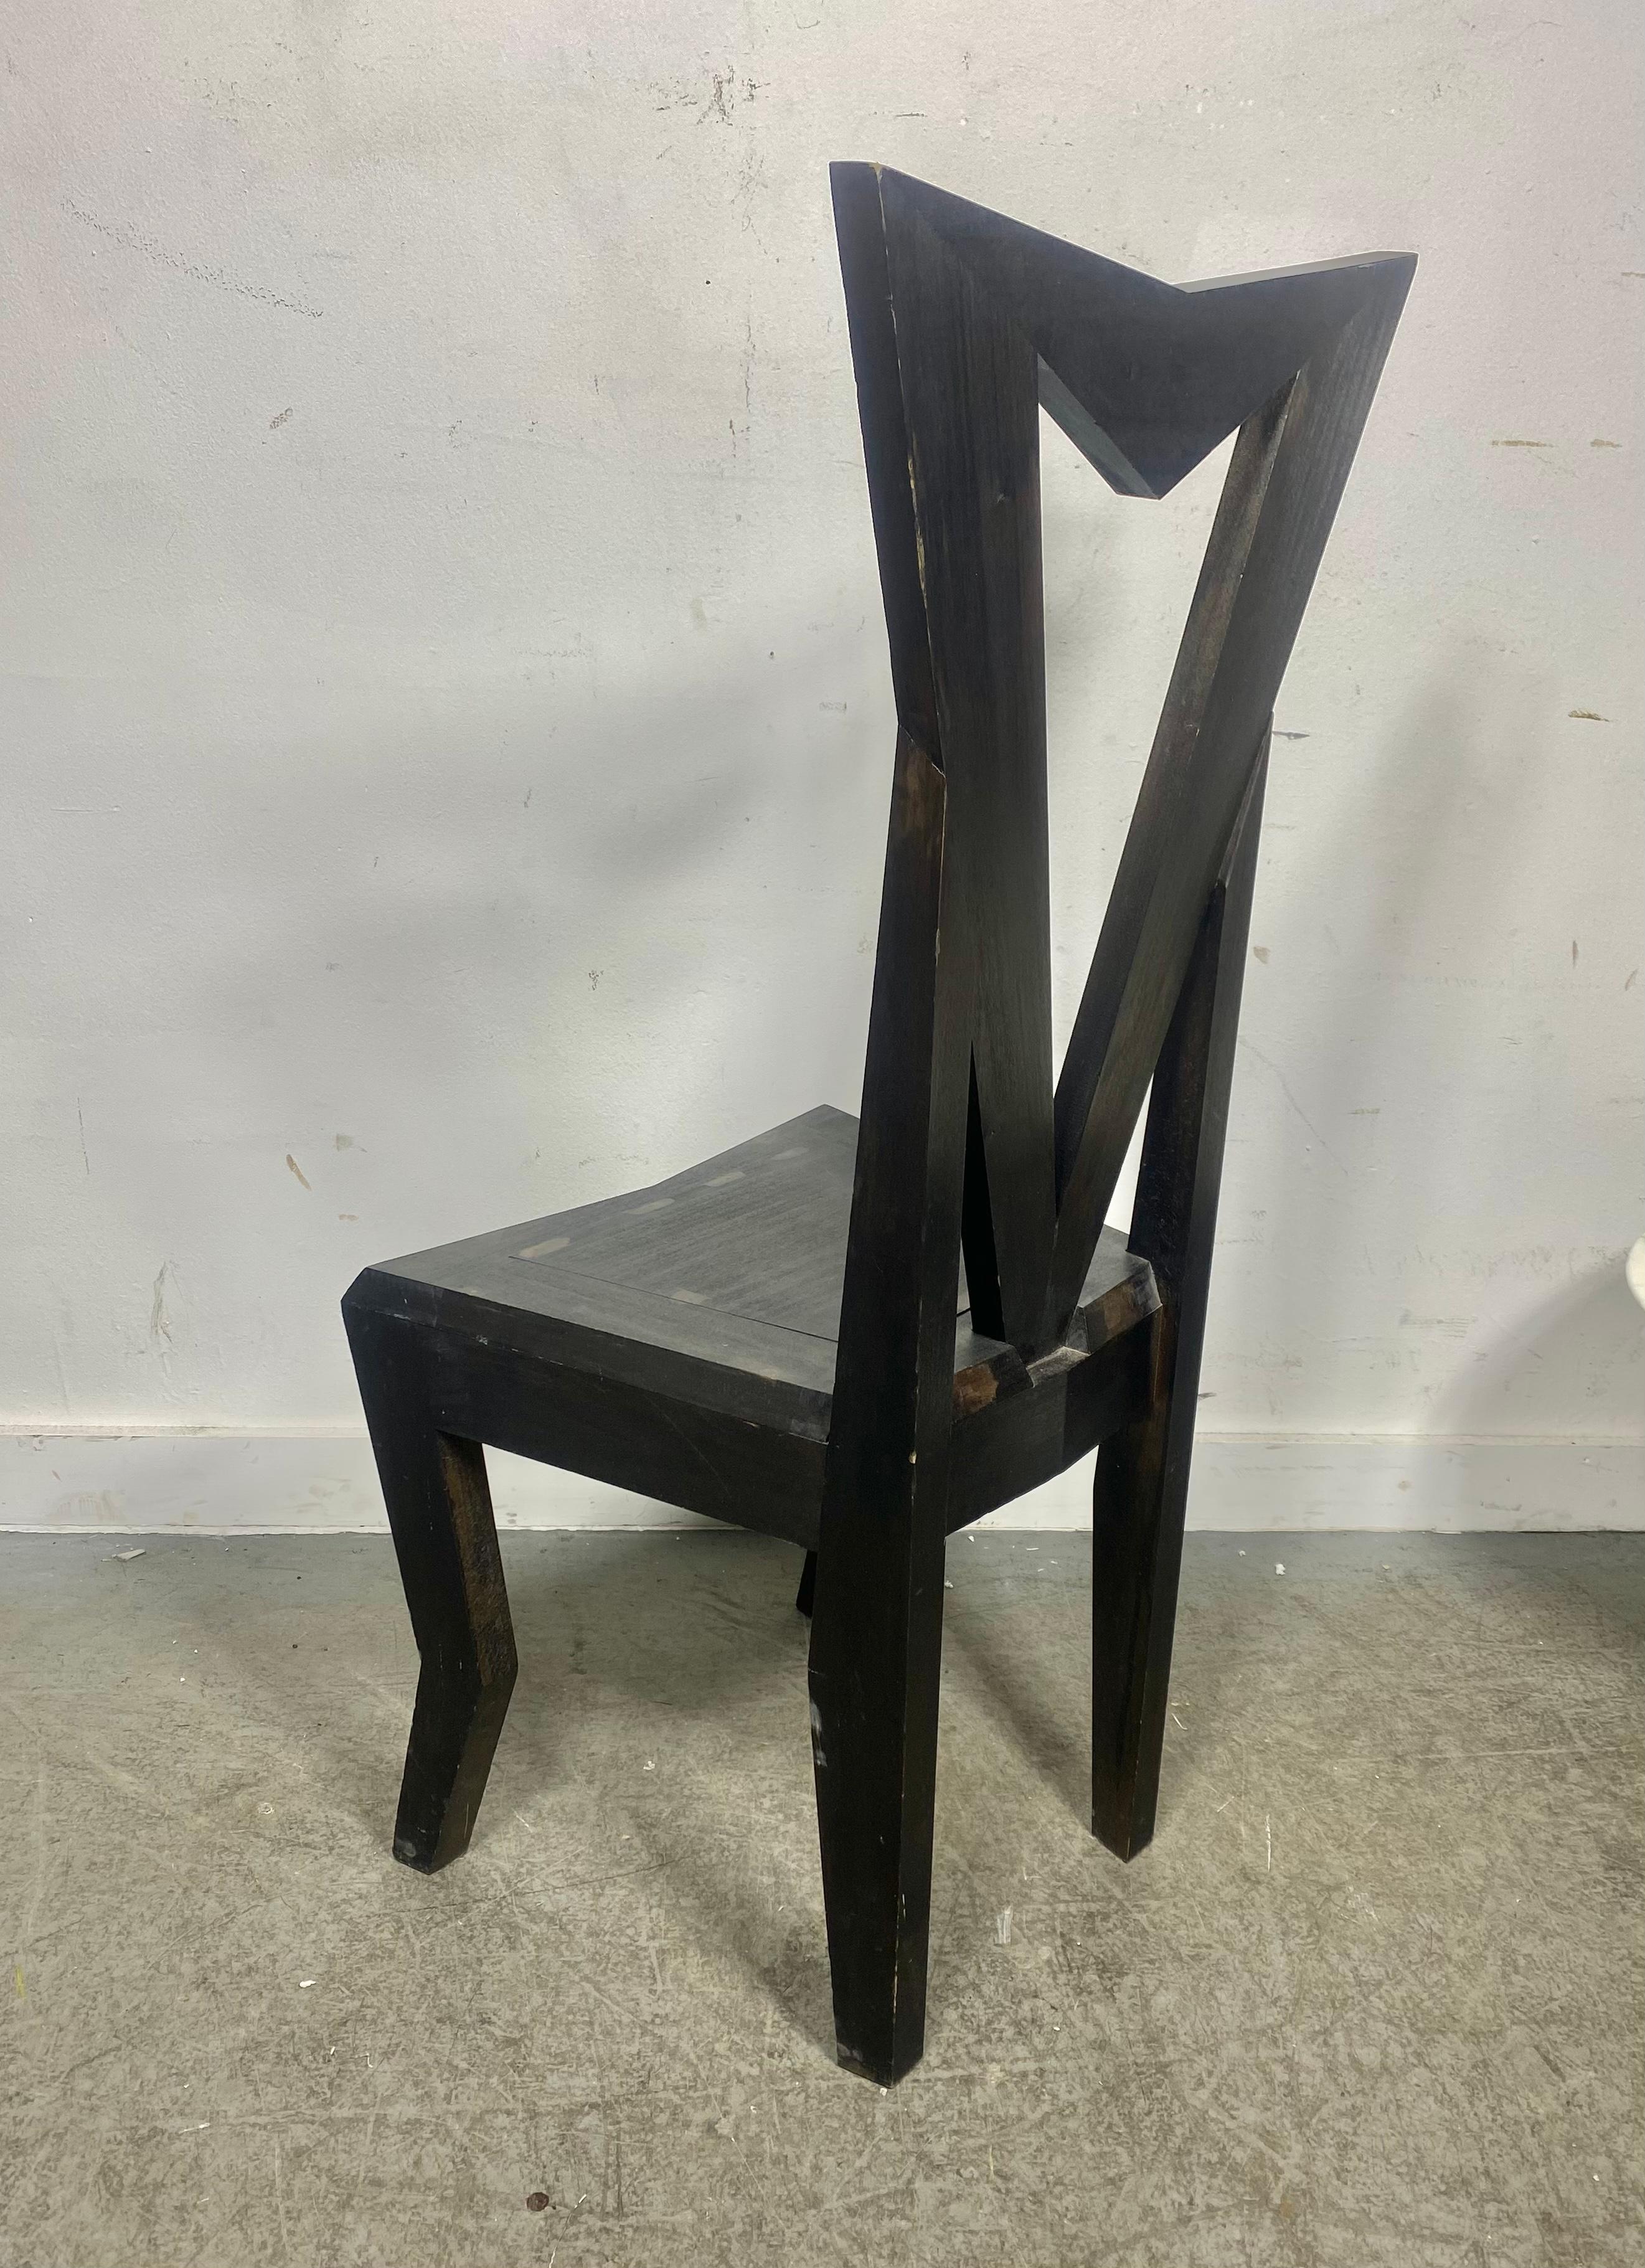 De Stijl Czech Cubist Side Chair design by Pavel Janak for Modernista For Sale